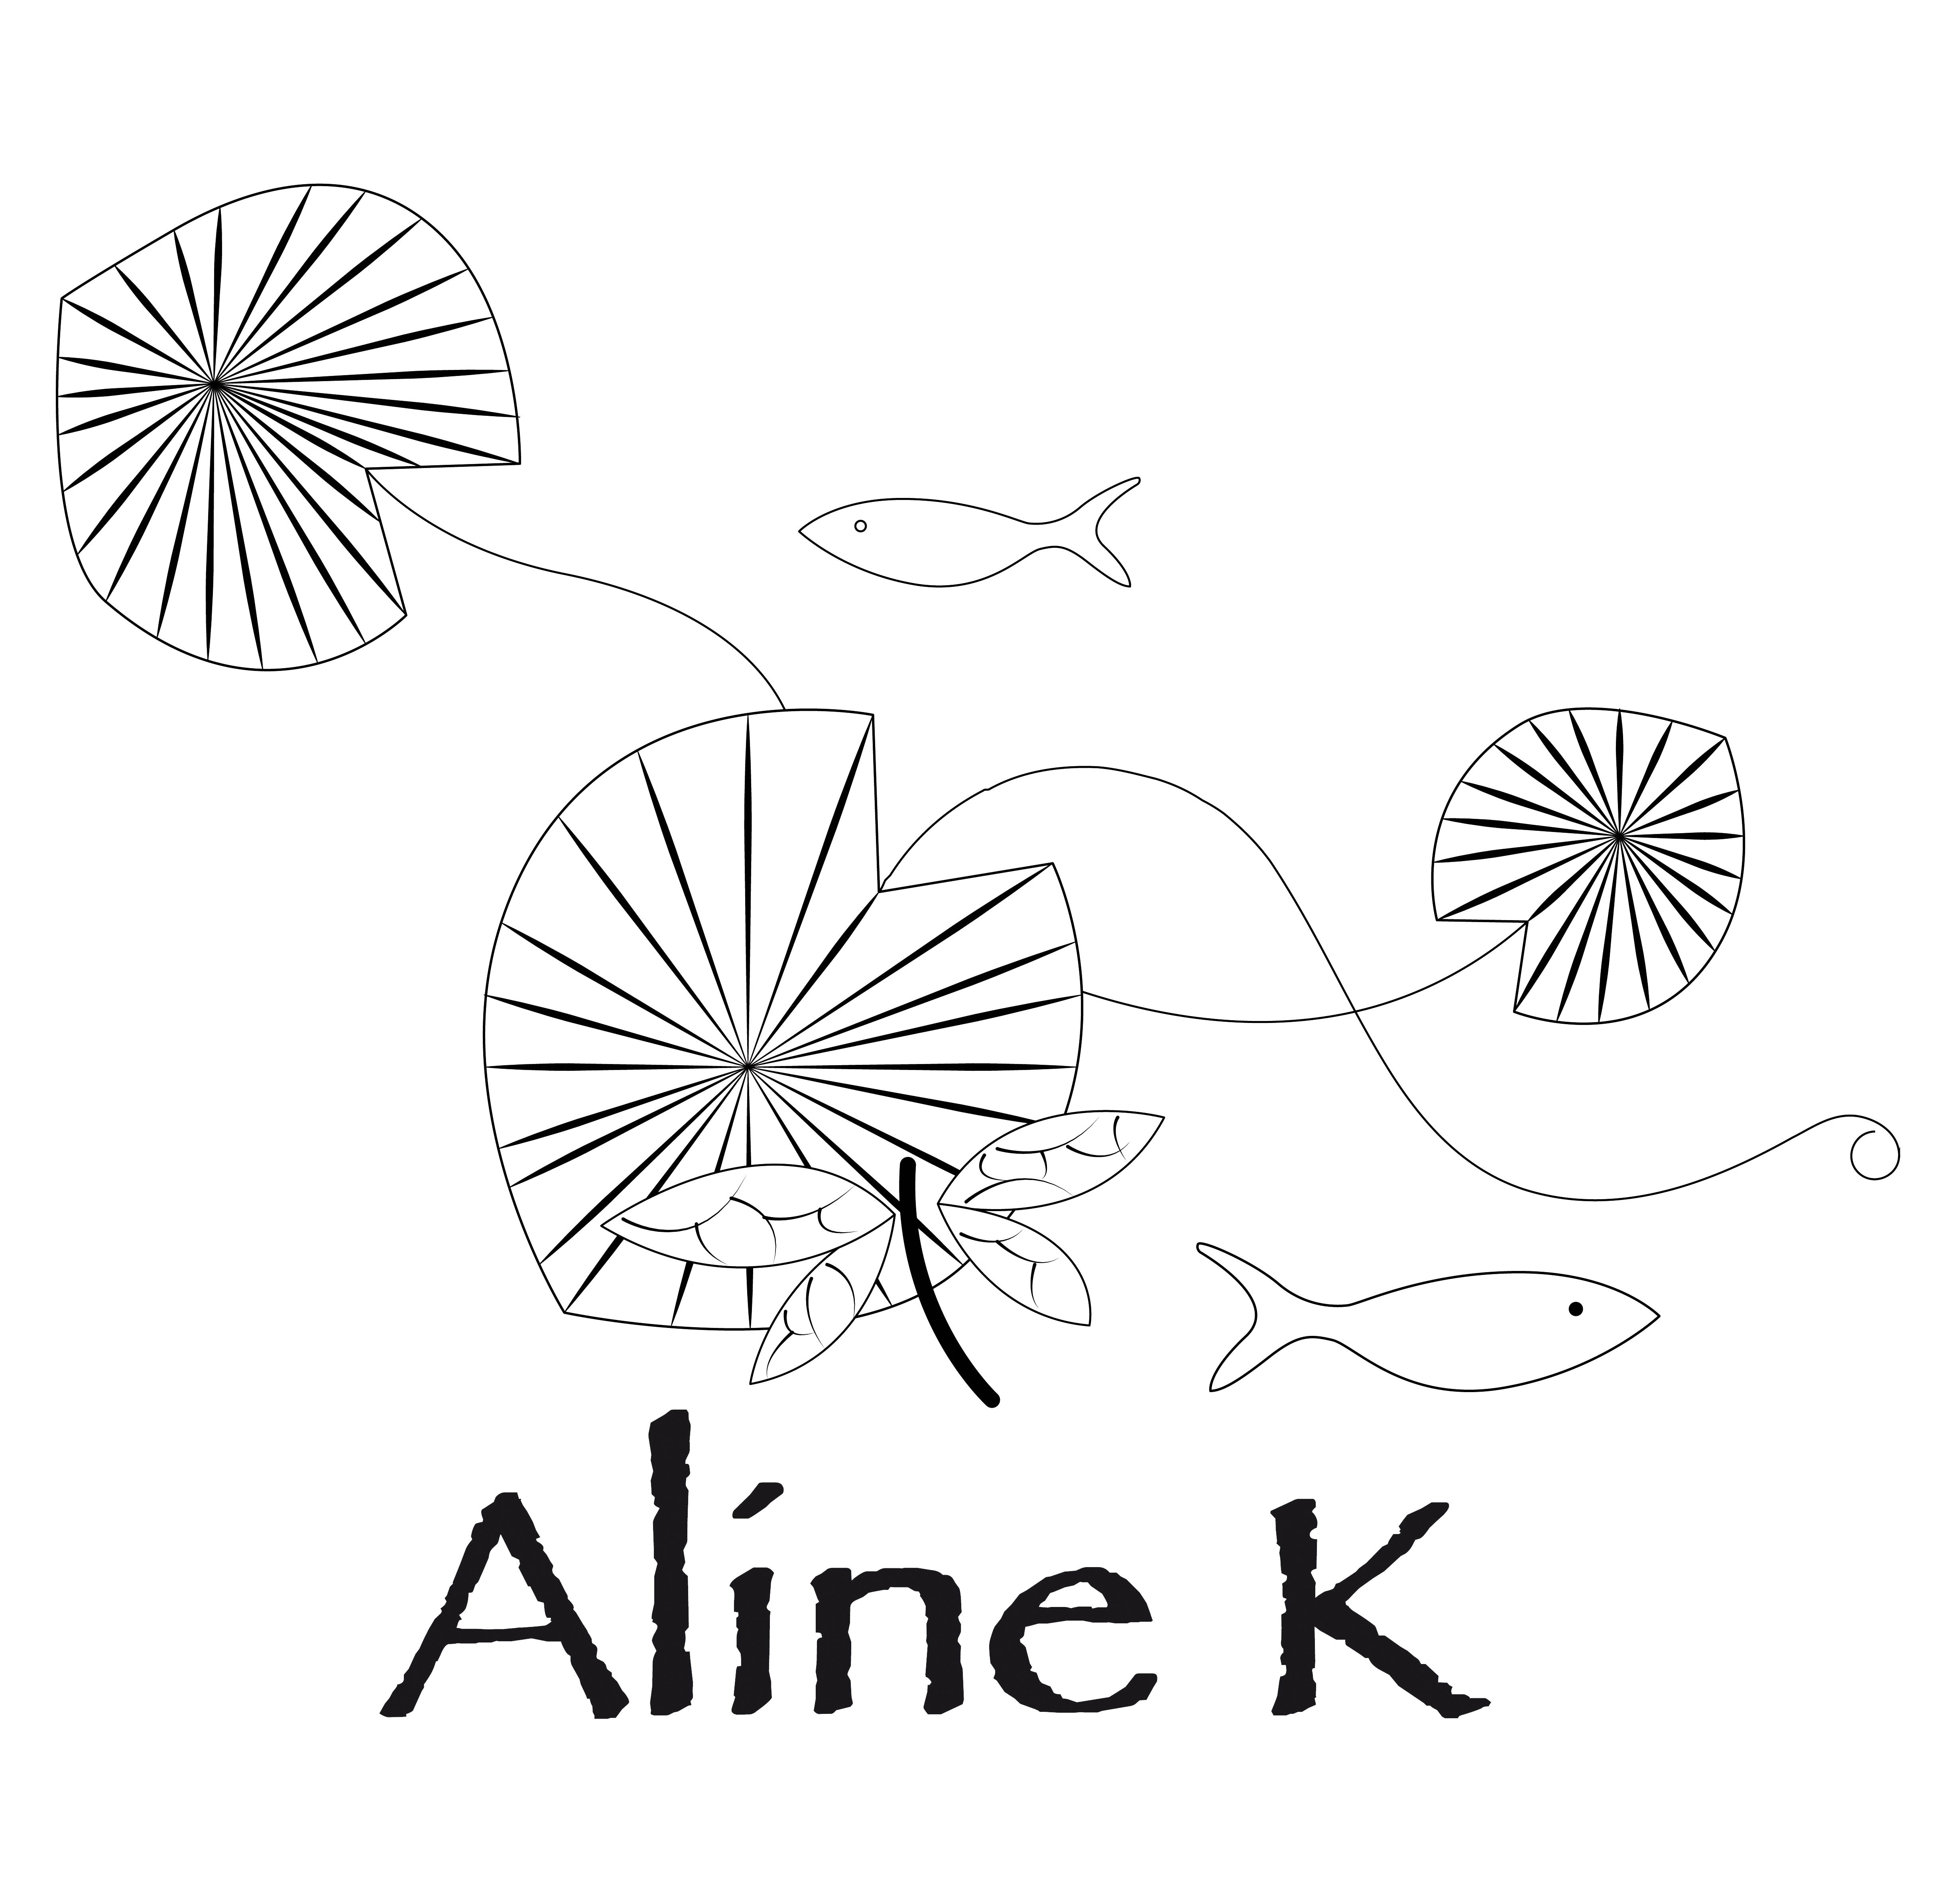 ALINE K